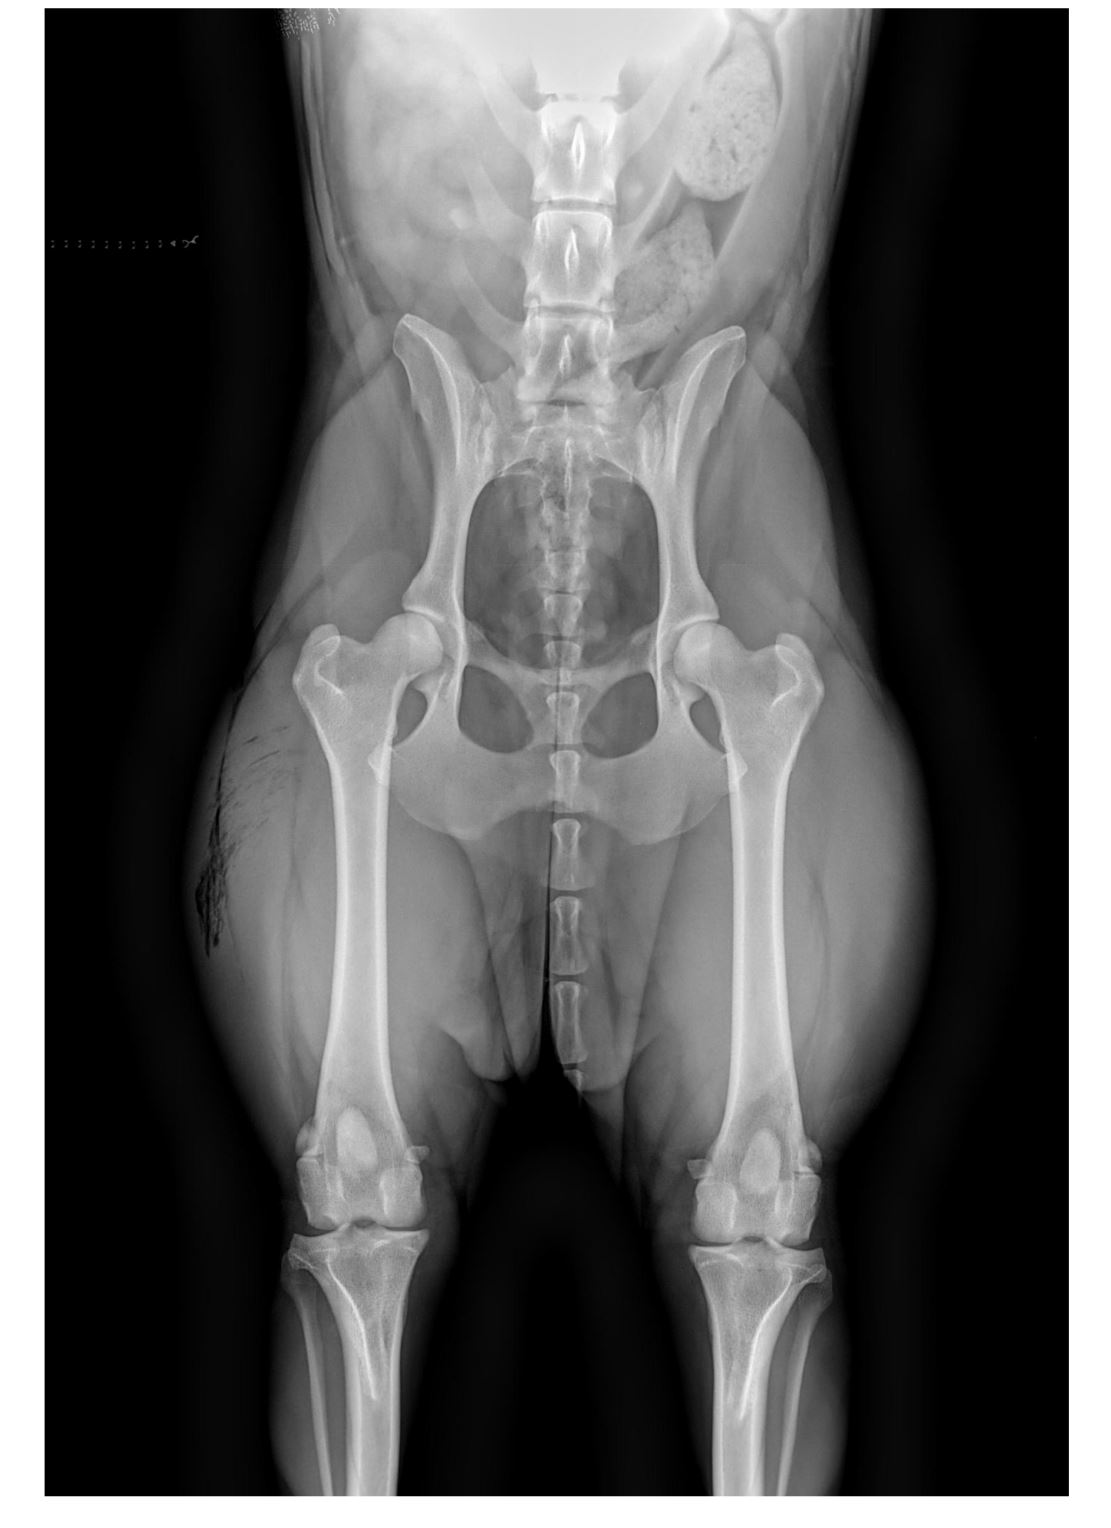 Röntgenbild vom Hund